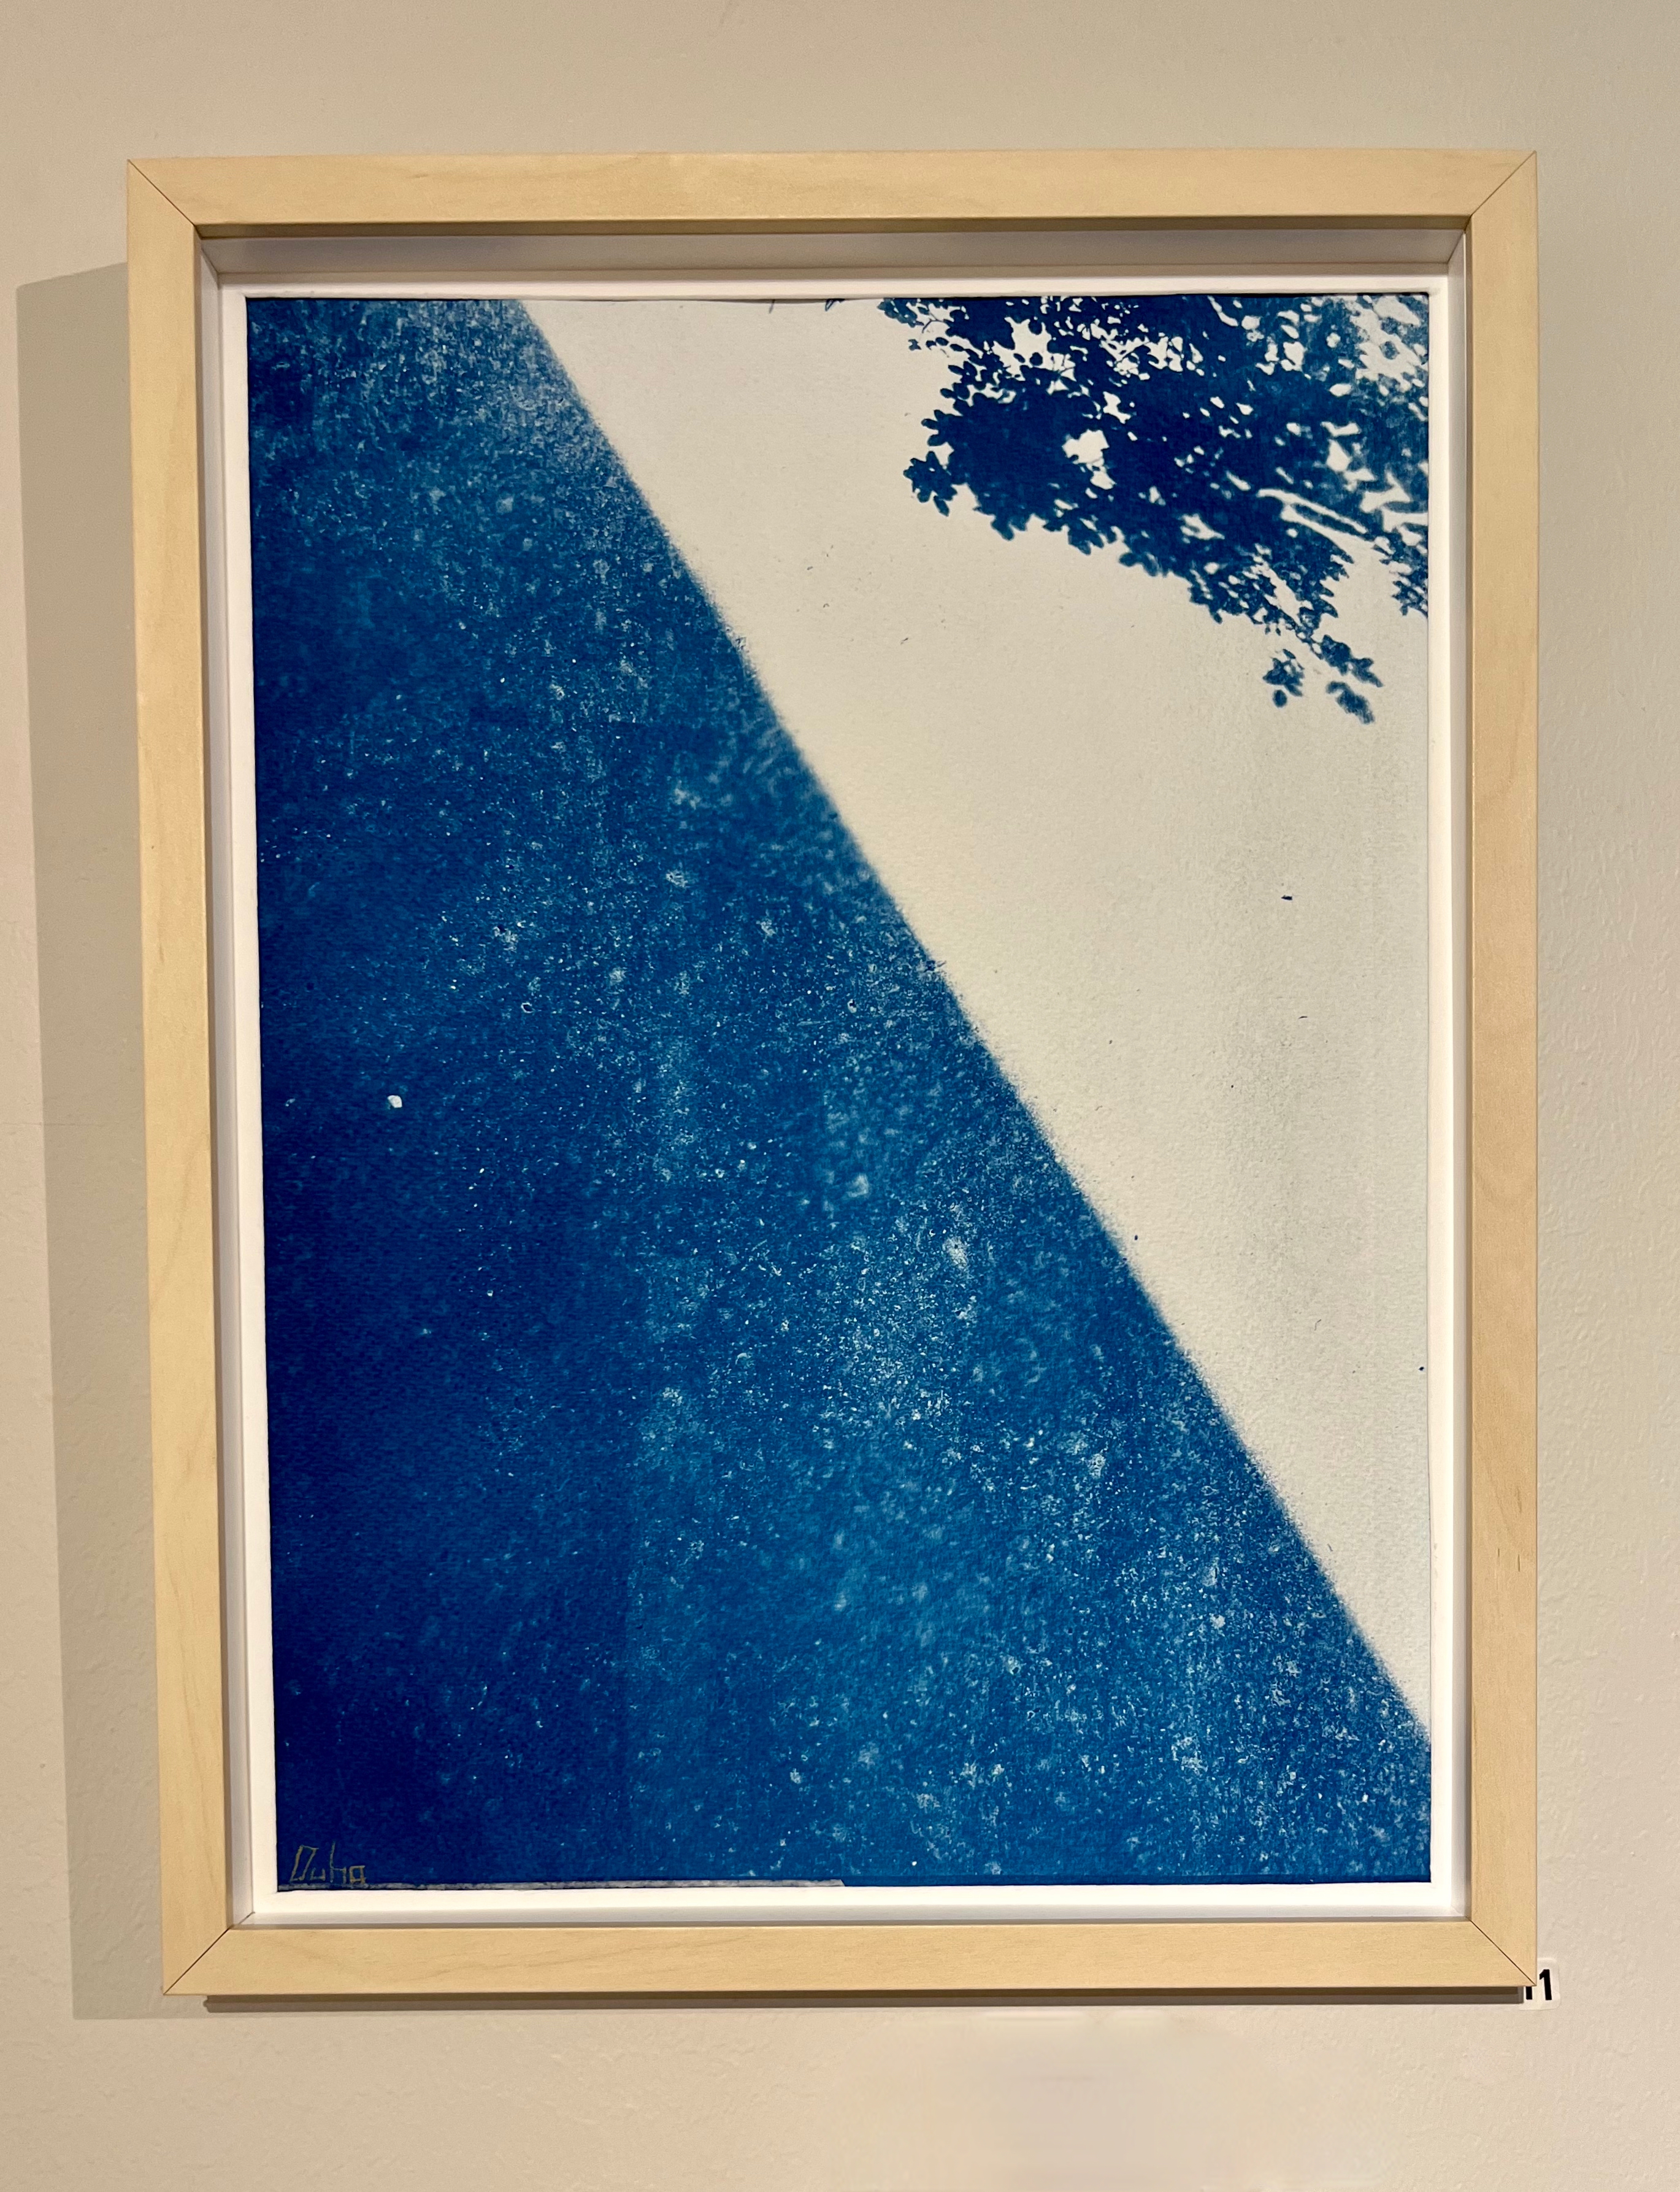  cyanotypi på akvarellpapper, 30x40cm	800kr